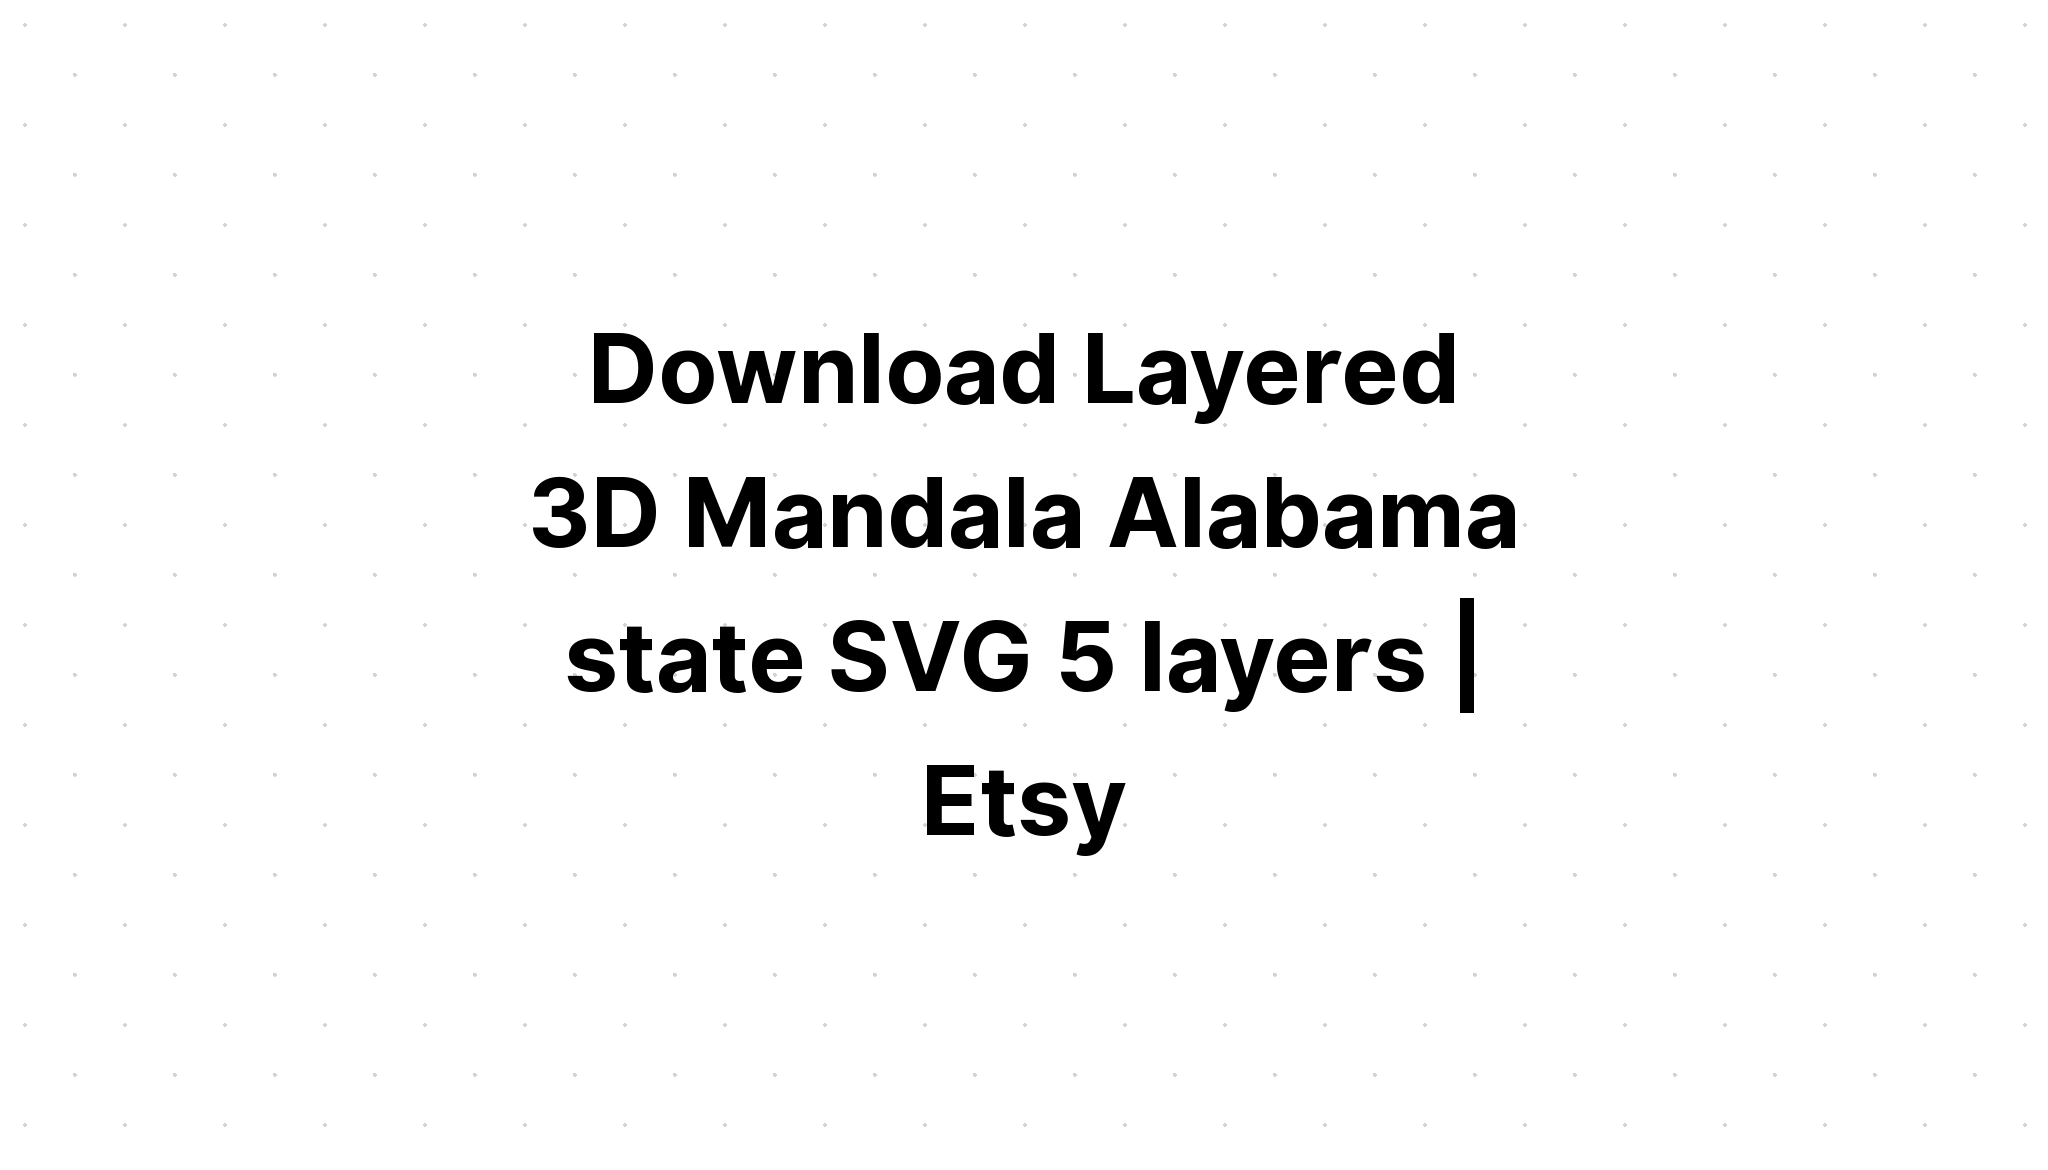 Download Layered Mandala Alabama Svg Project - Layered SVG Cut File